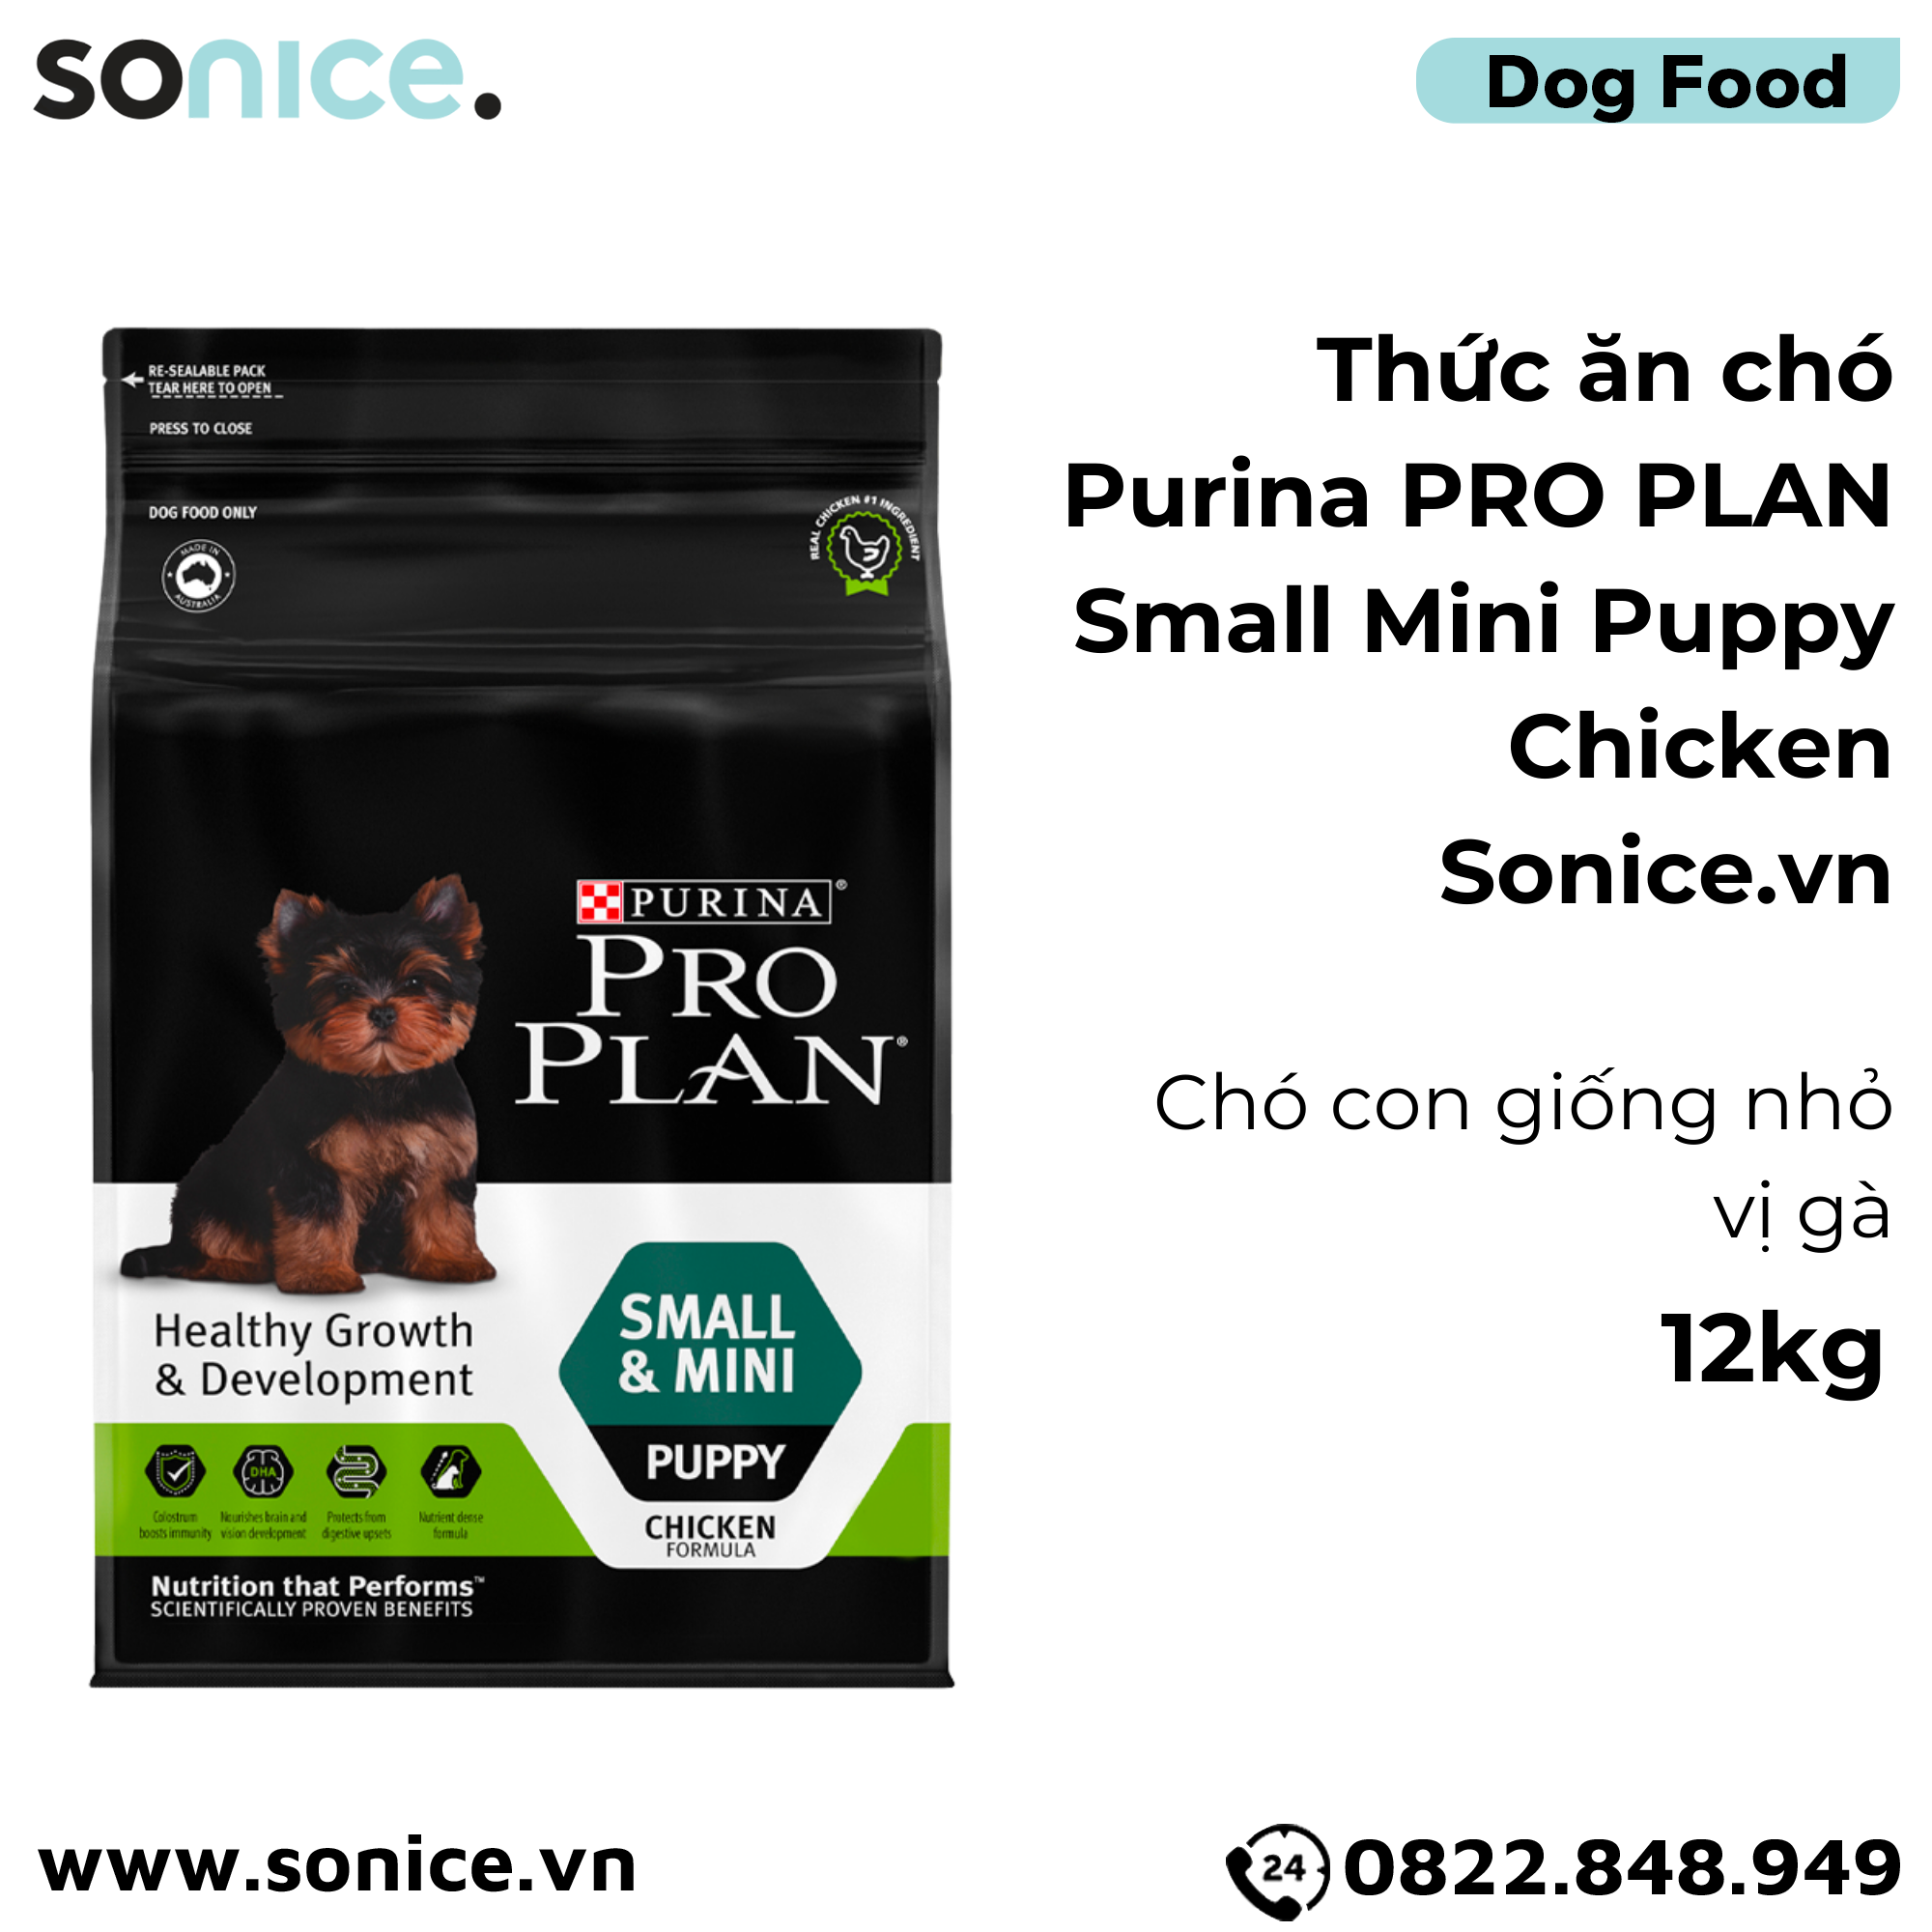  Thức ăn chó Purina PRO PLAN Small Mini Puppy Chicken 12kg - chó con giống nhỏ vị gà SONICE. 